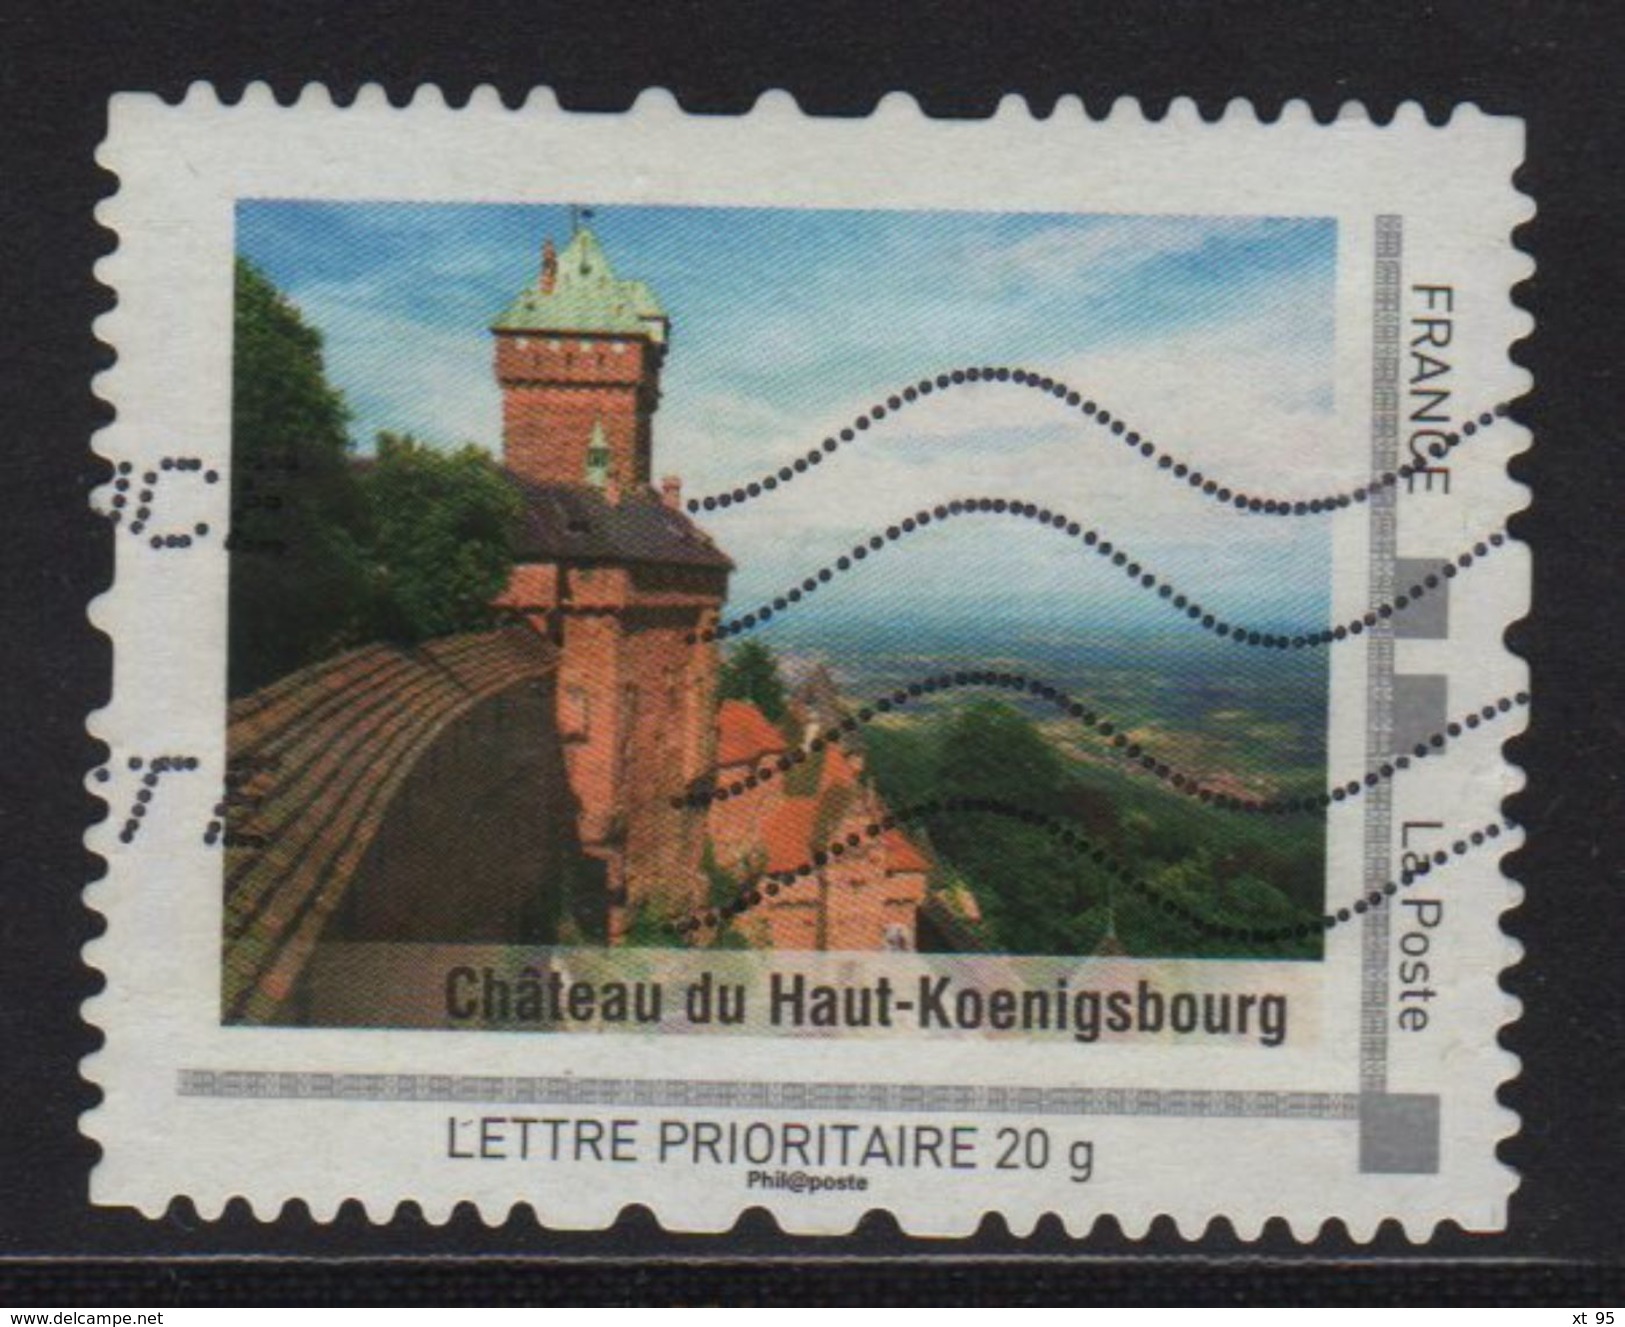 Timbre Personnalise Oblitere - Lettre Prioritaire 20g - Chateau Du Haut Koenigsbourg - Oblitérés